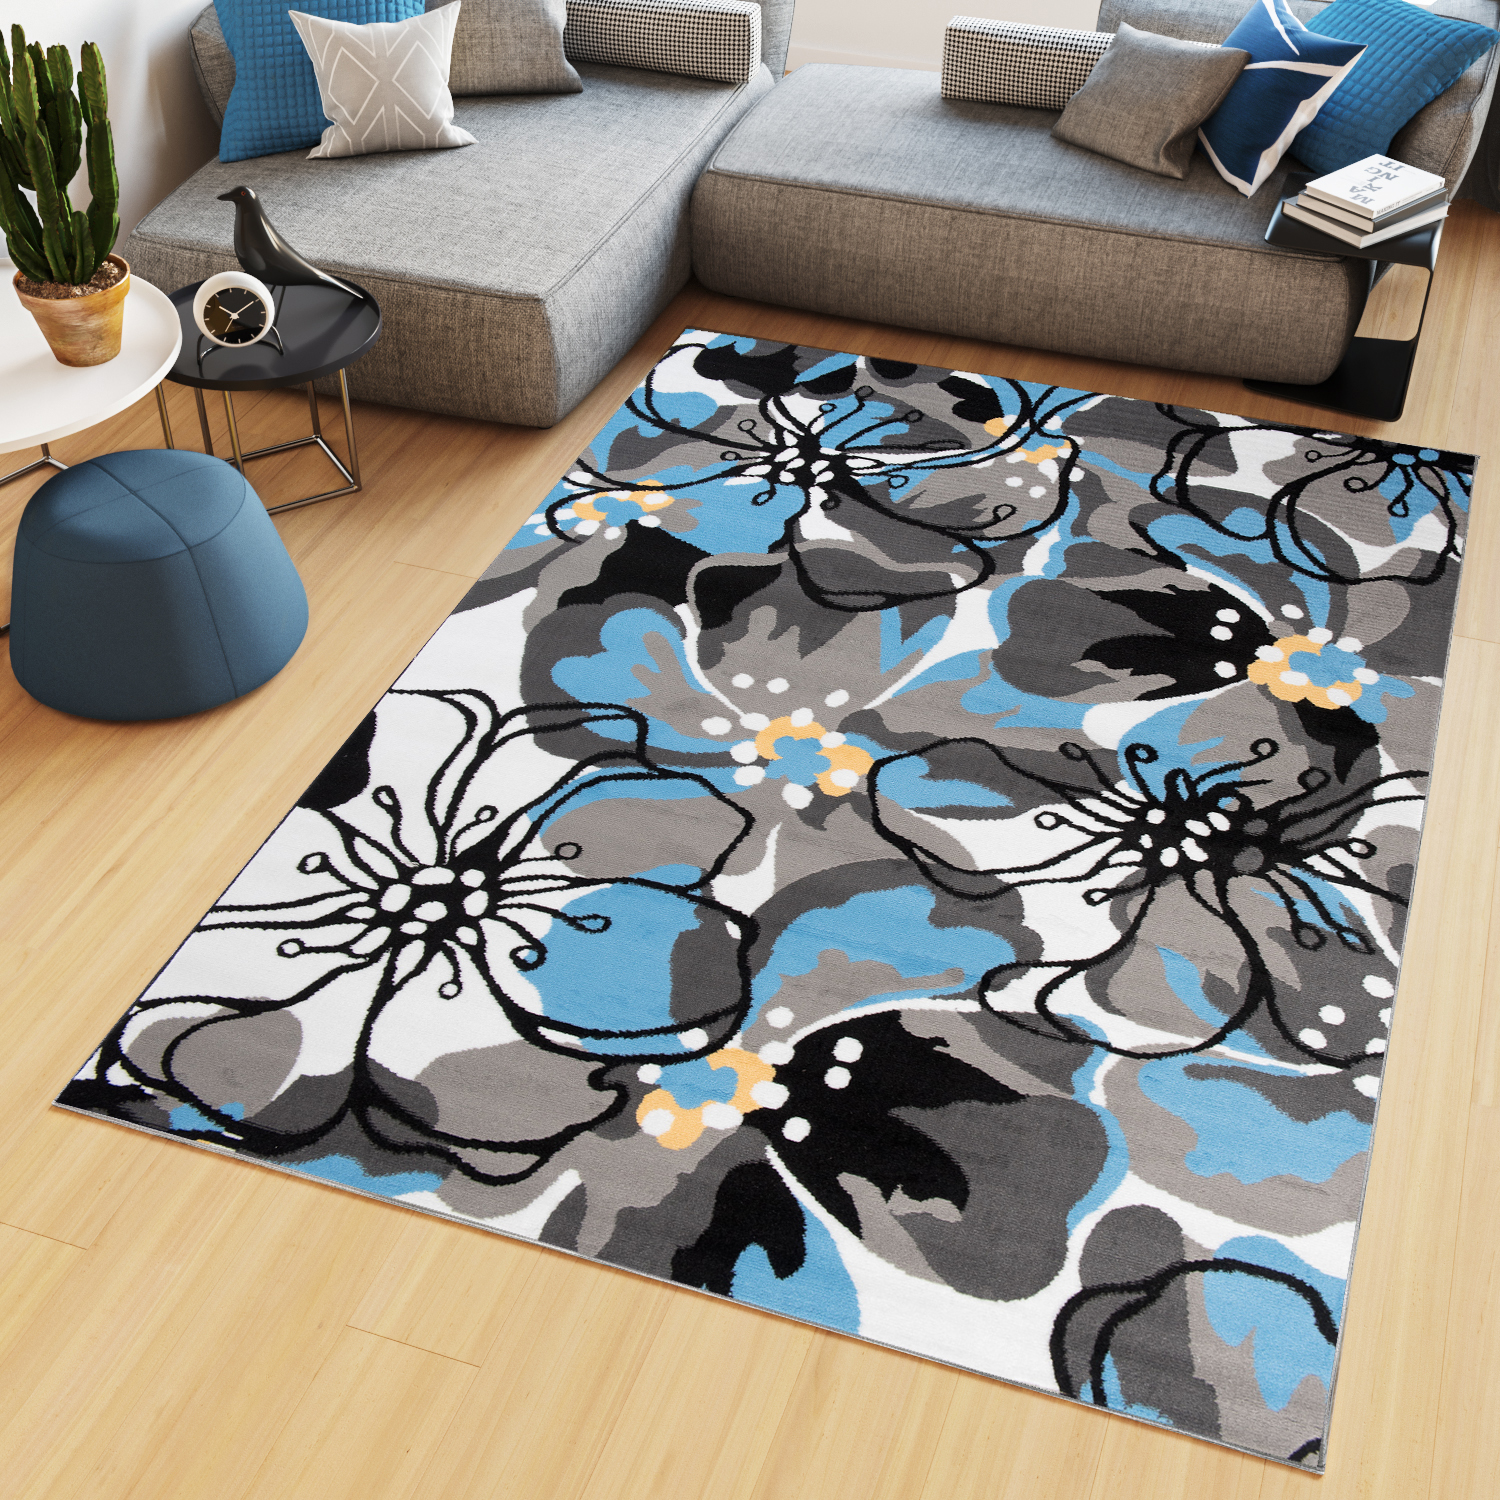 Teppich Modern Floral Blumenmuster Design Wohnzimmer Schlafzimmer Grau Blau NEU 